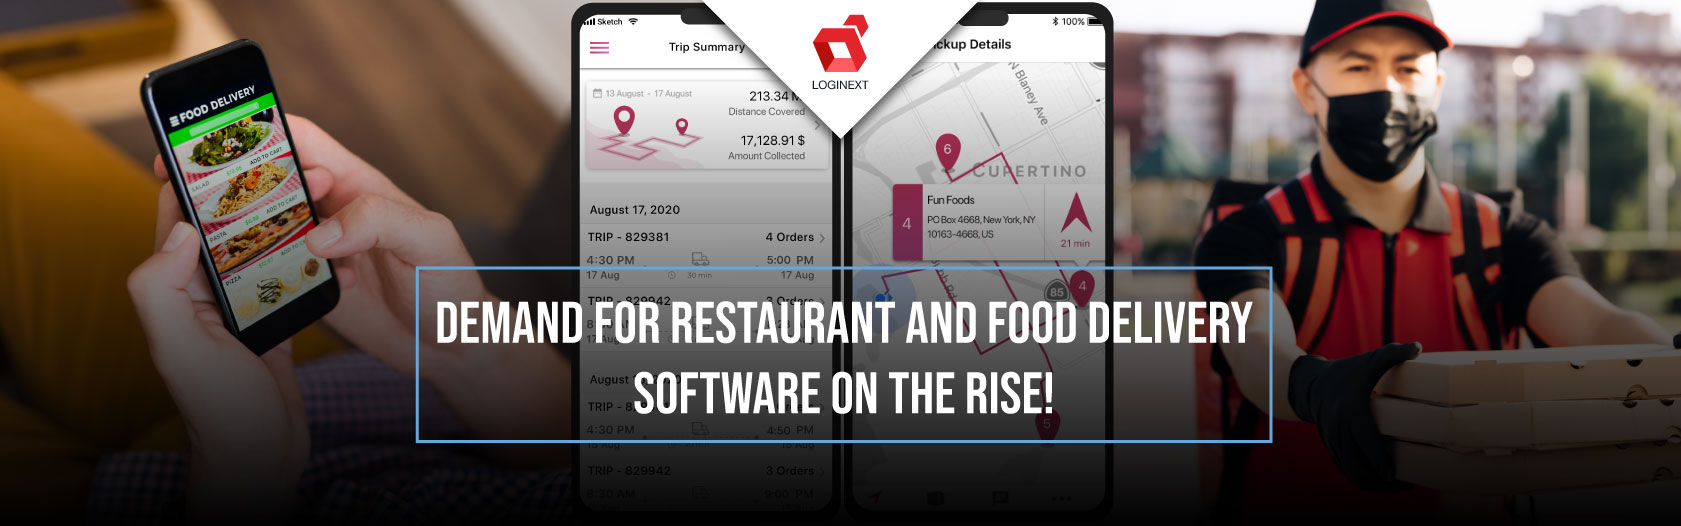 Növekszik a kereslet az éttermi és ételszállító szoftverek iránt!